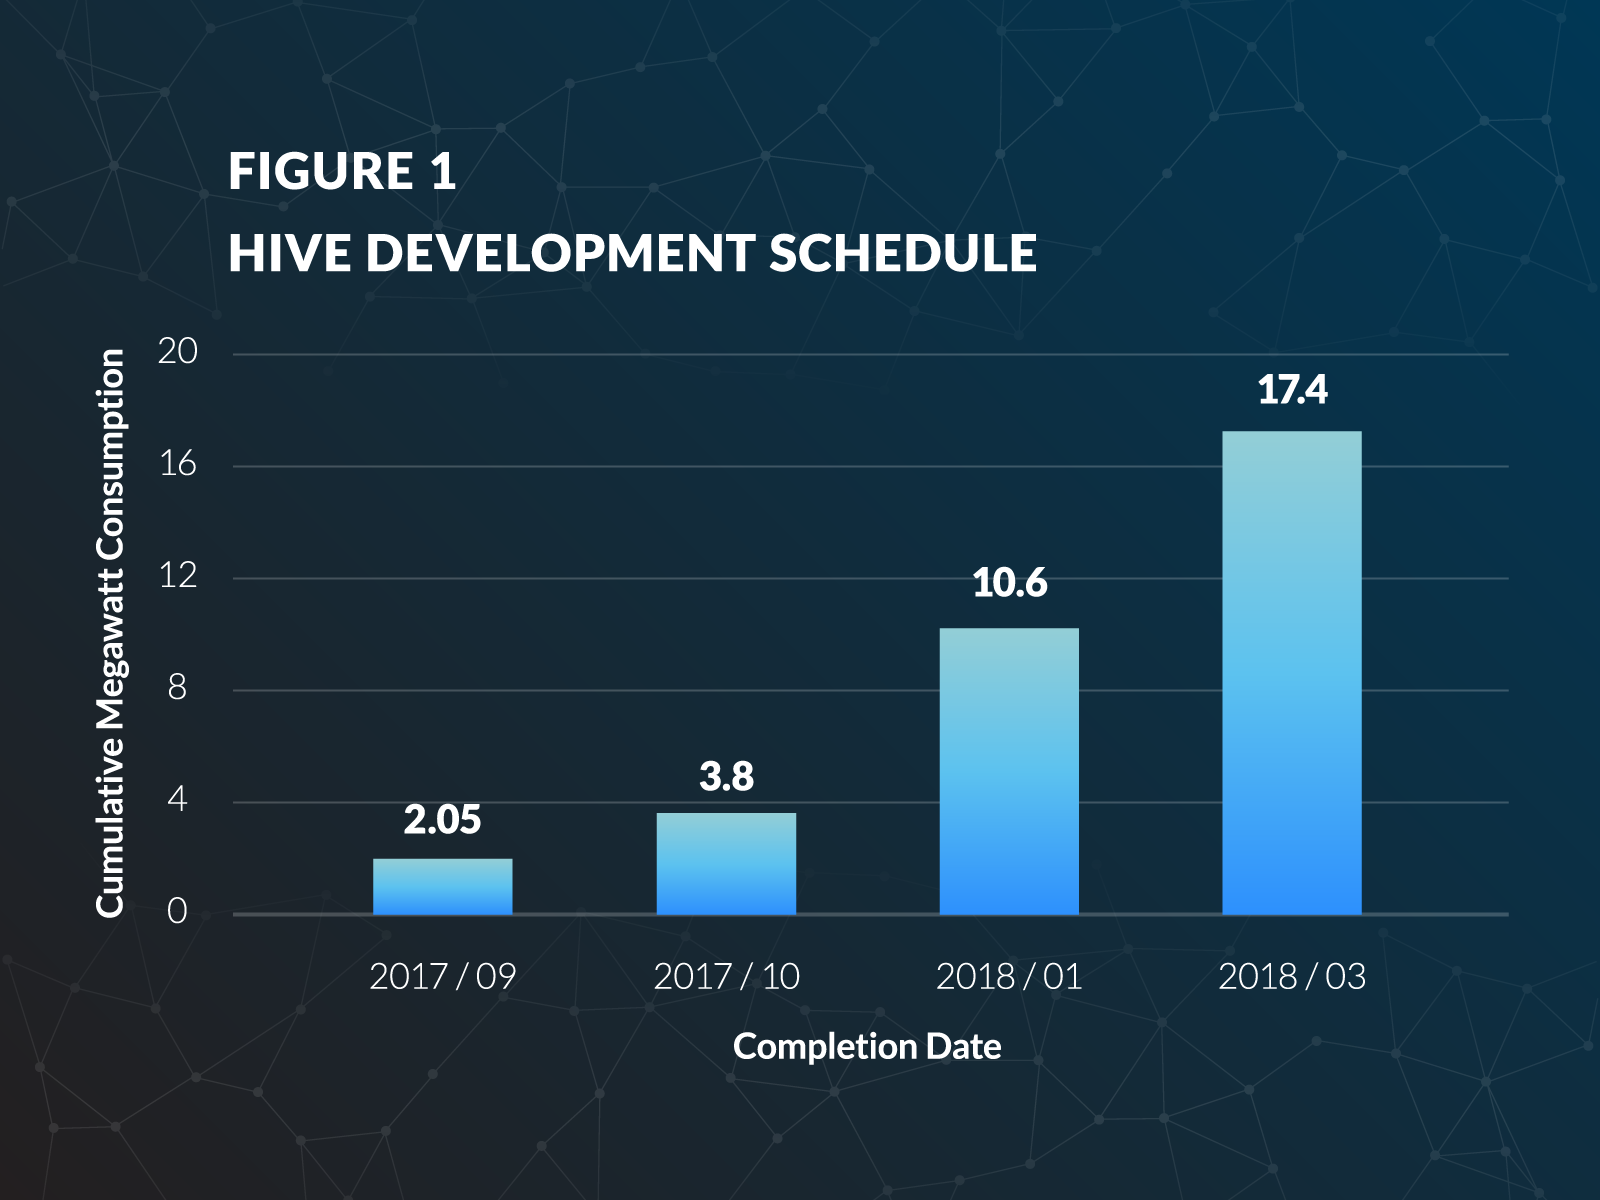 hive_entwicklungsplan_bis_2018-03.png